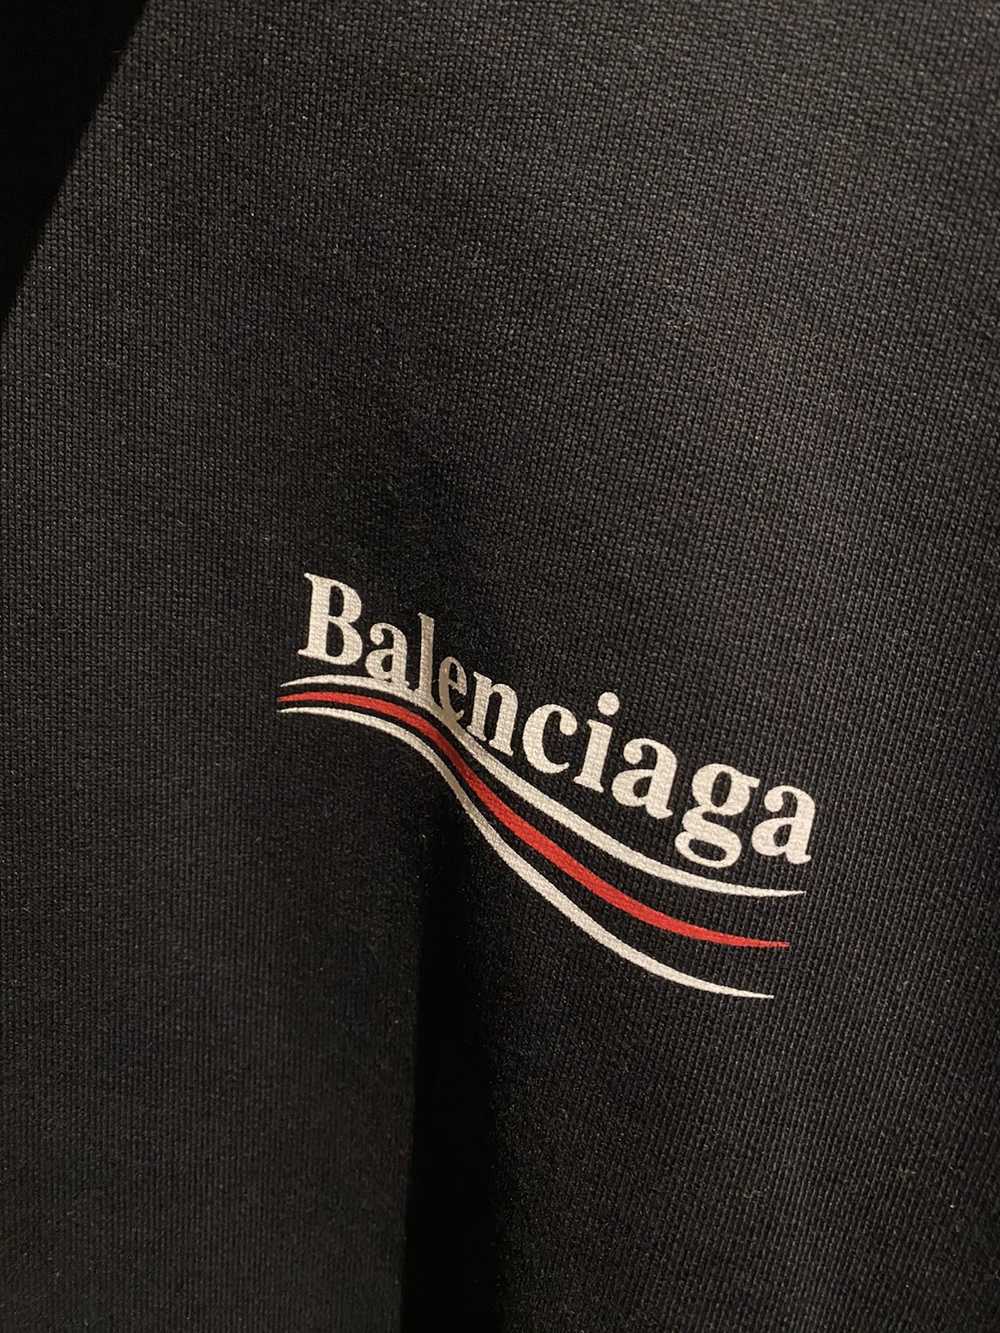 Balenciaga Balenciaga Campaign Hoodie 2017 - image 3